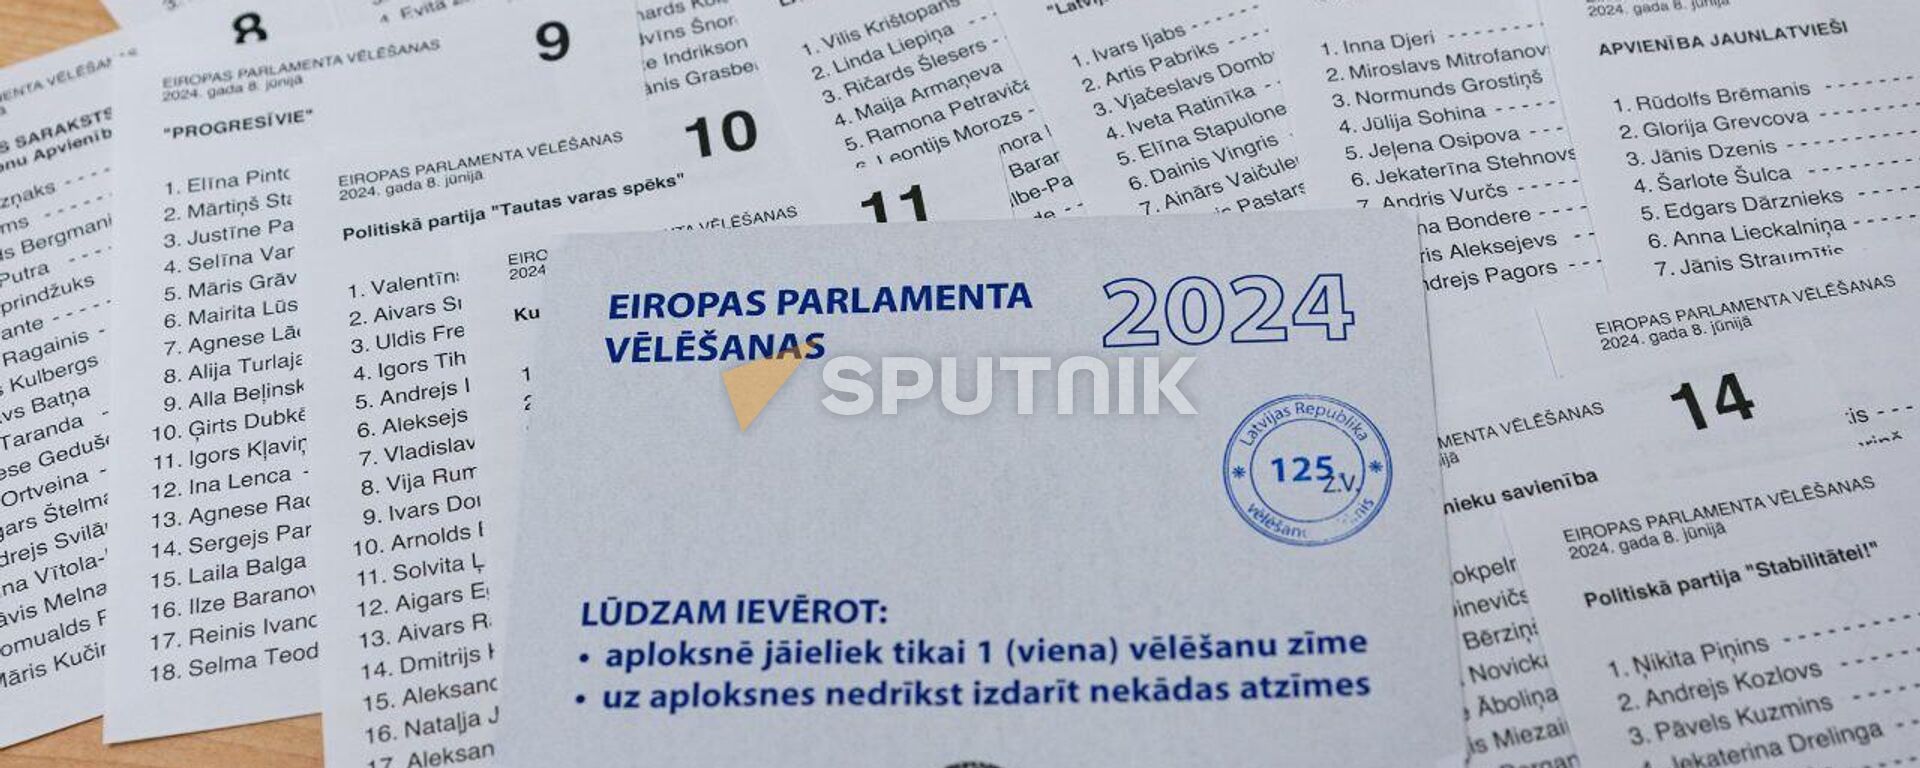 Выборы в Европарламент 2024 - Sputnik Латвия, 1920, 09.06.2024